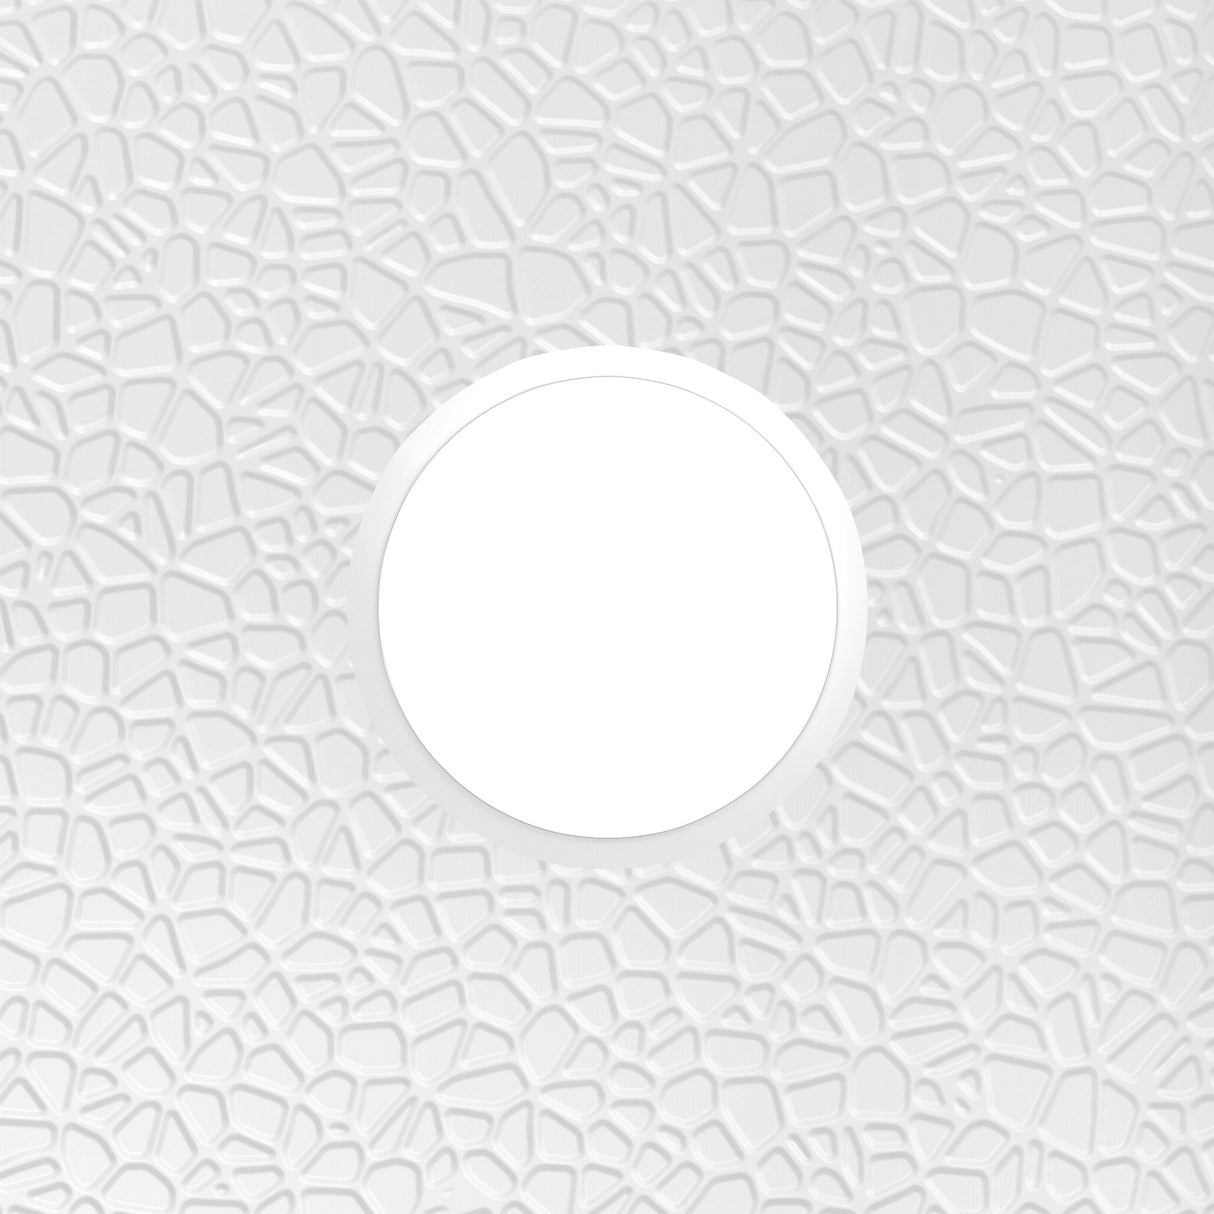 DreamLine DreamStone 36 in. D x 36 in. W x 5 1/2 in. H Corner Drain Neo-Angle Shower Base in White